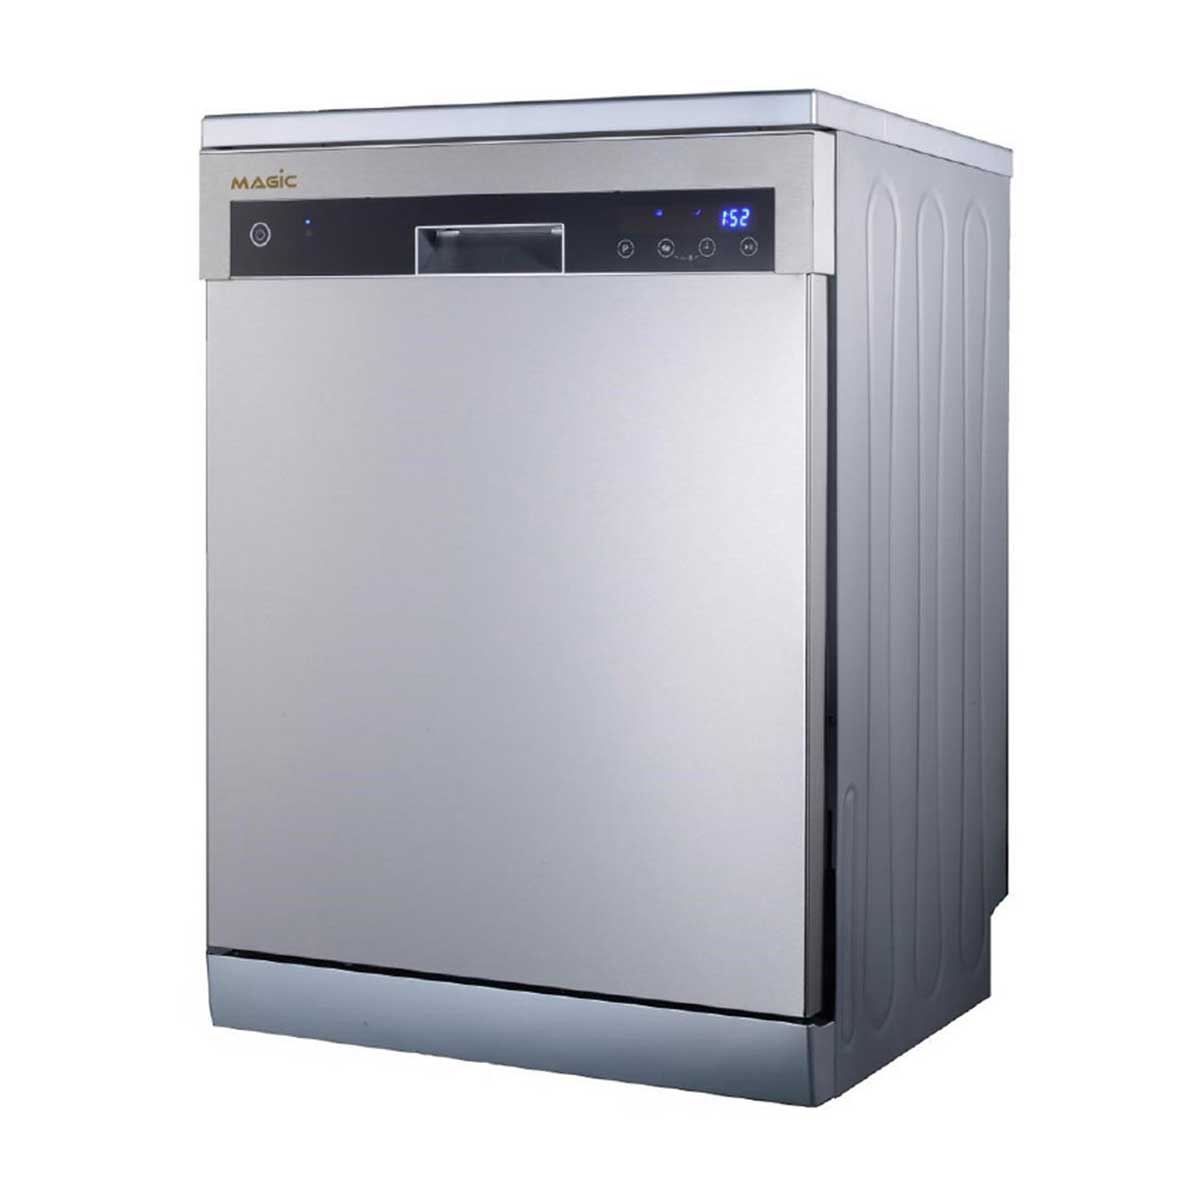 نکته خرید - قیمت روز ماشین ظرفشویی مجیک مدل MAGIC-DW15NS خرید